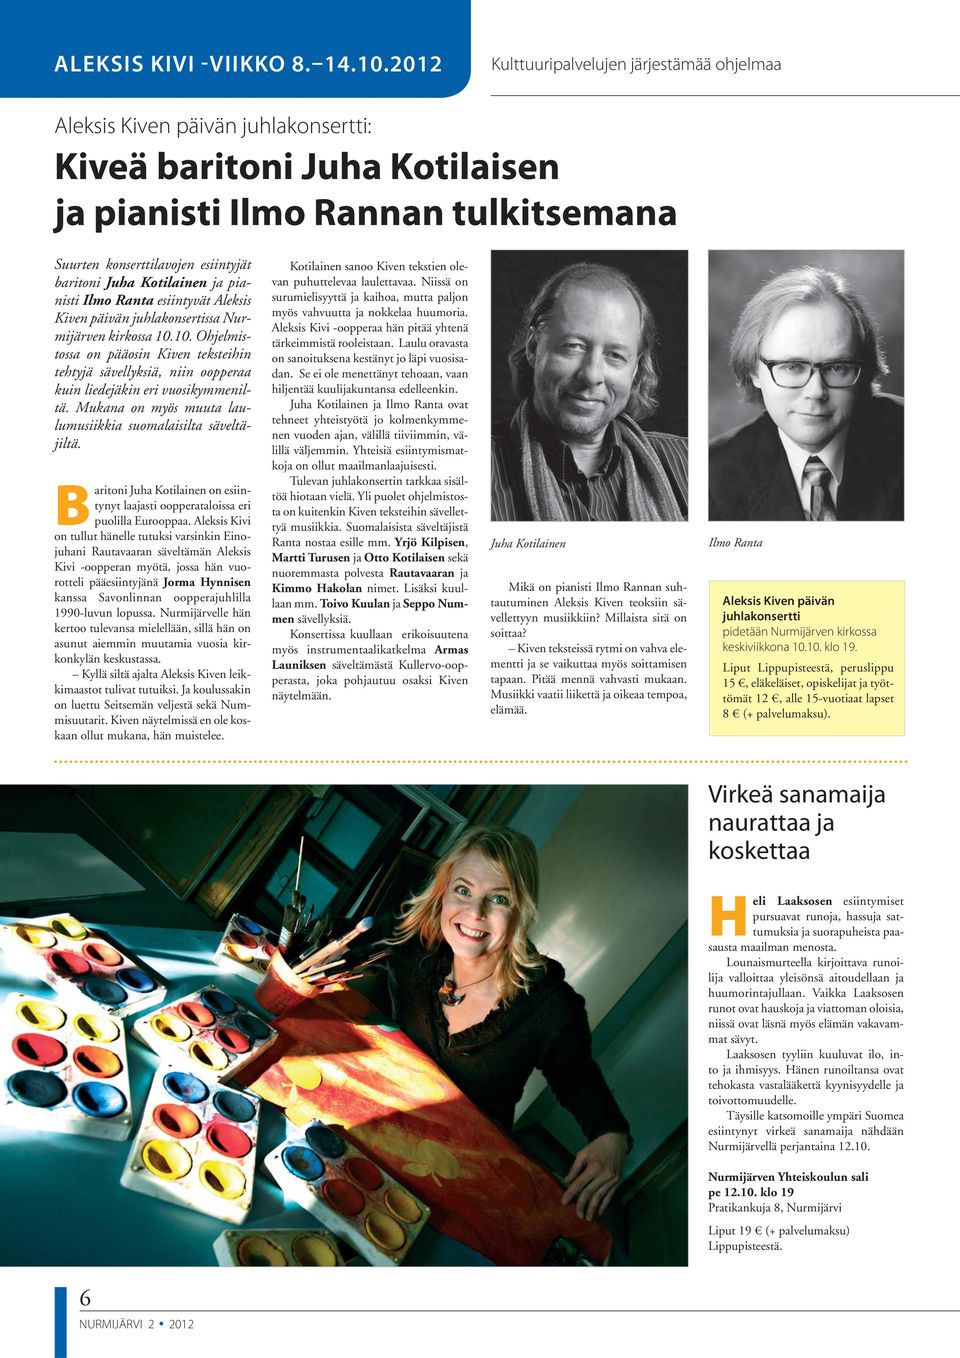 Juha Kotilainen ja pianisti Ilmo Ranta esiintyvät Aleksis Kiven päivän juhlakonsertissa Nurmijärven kirkossa 10.